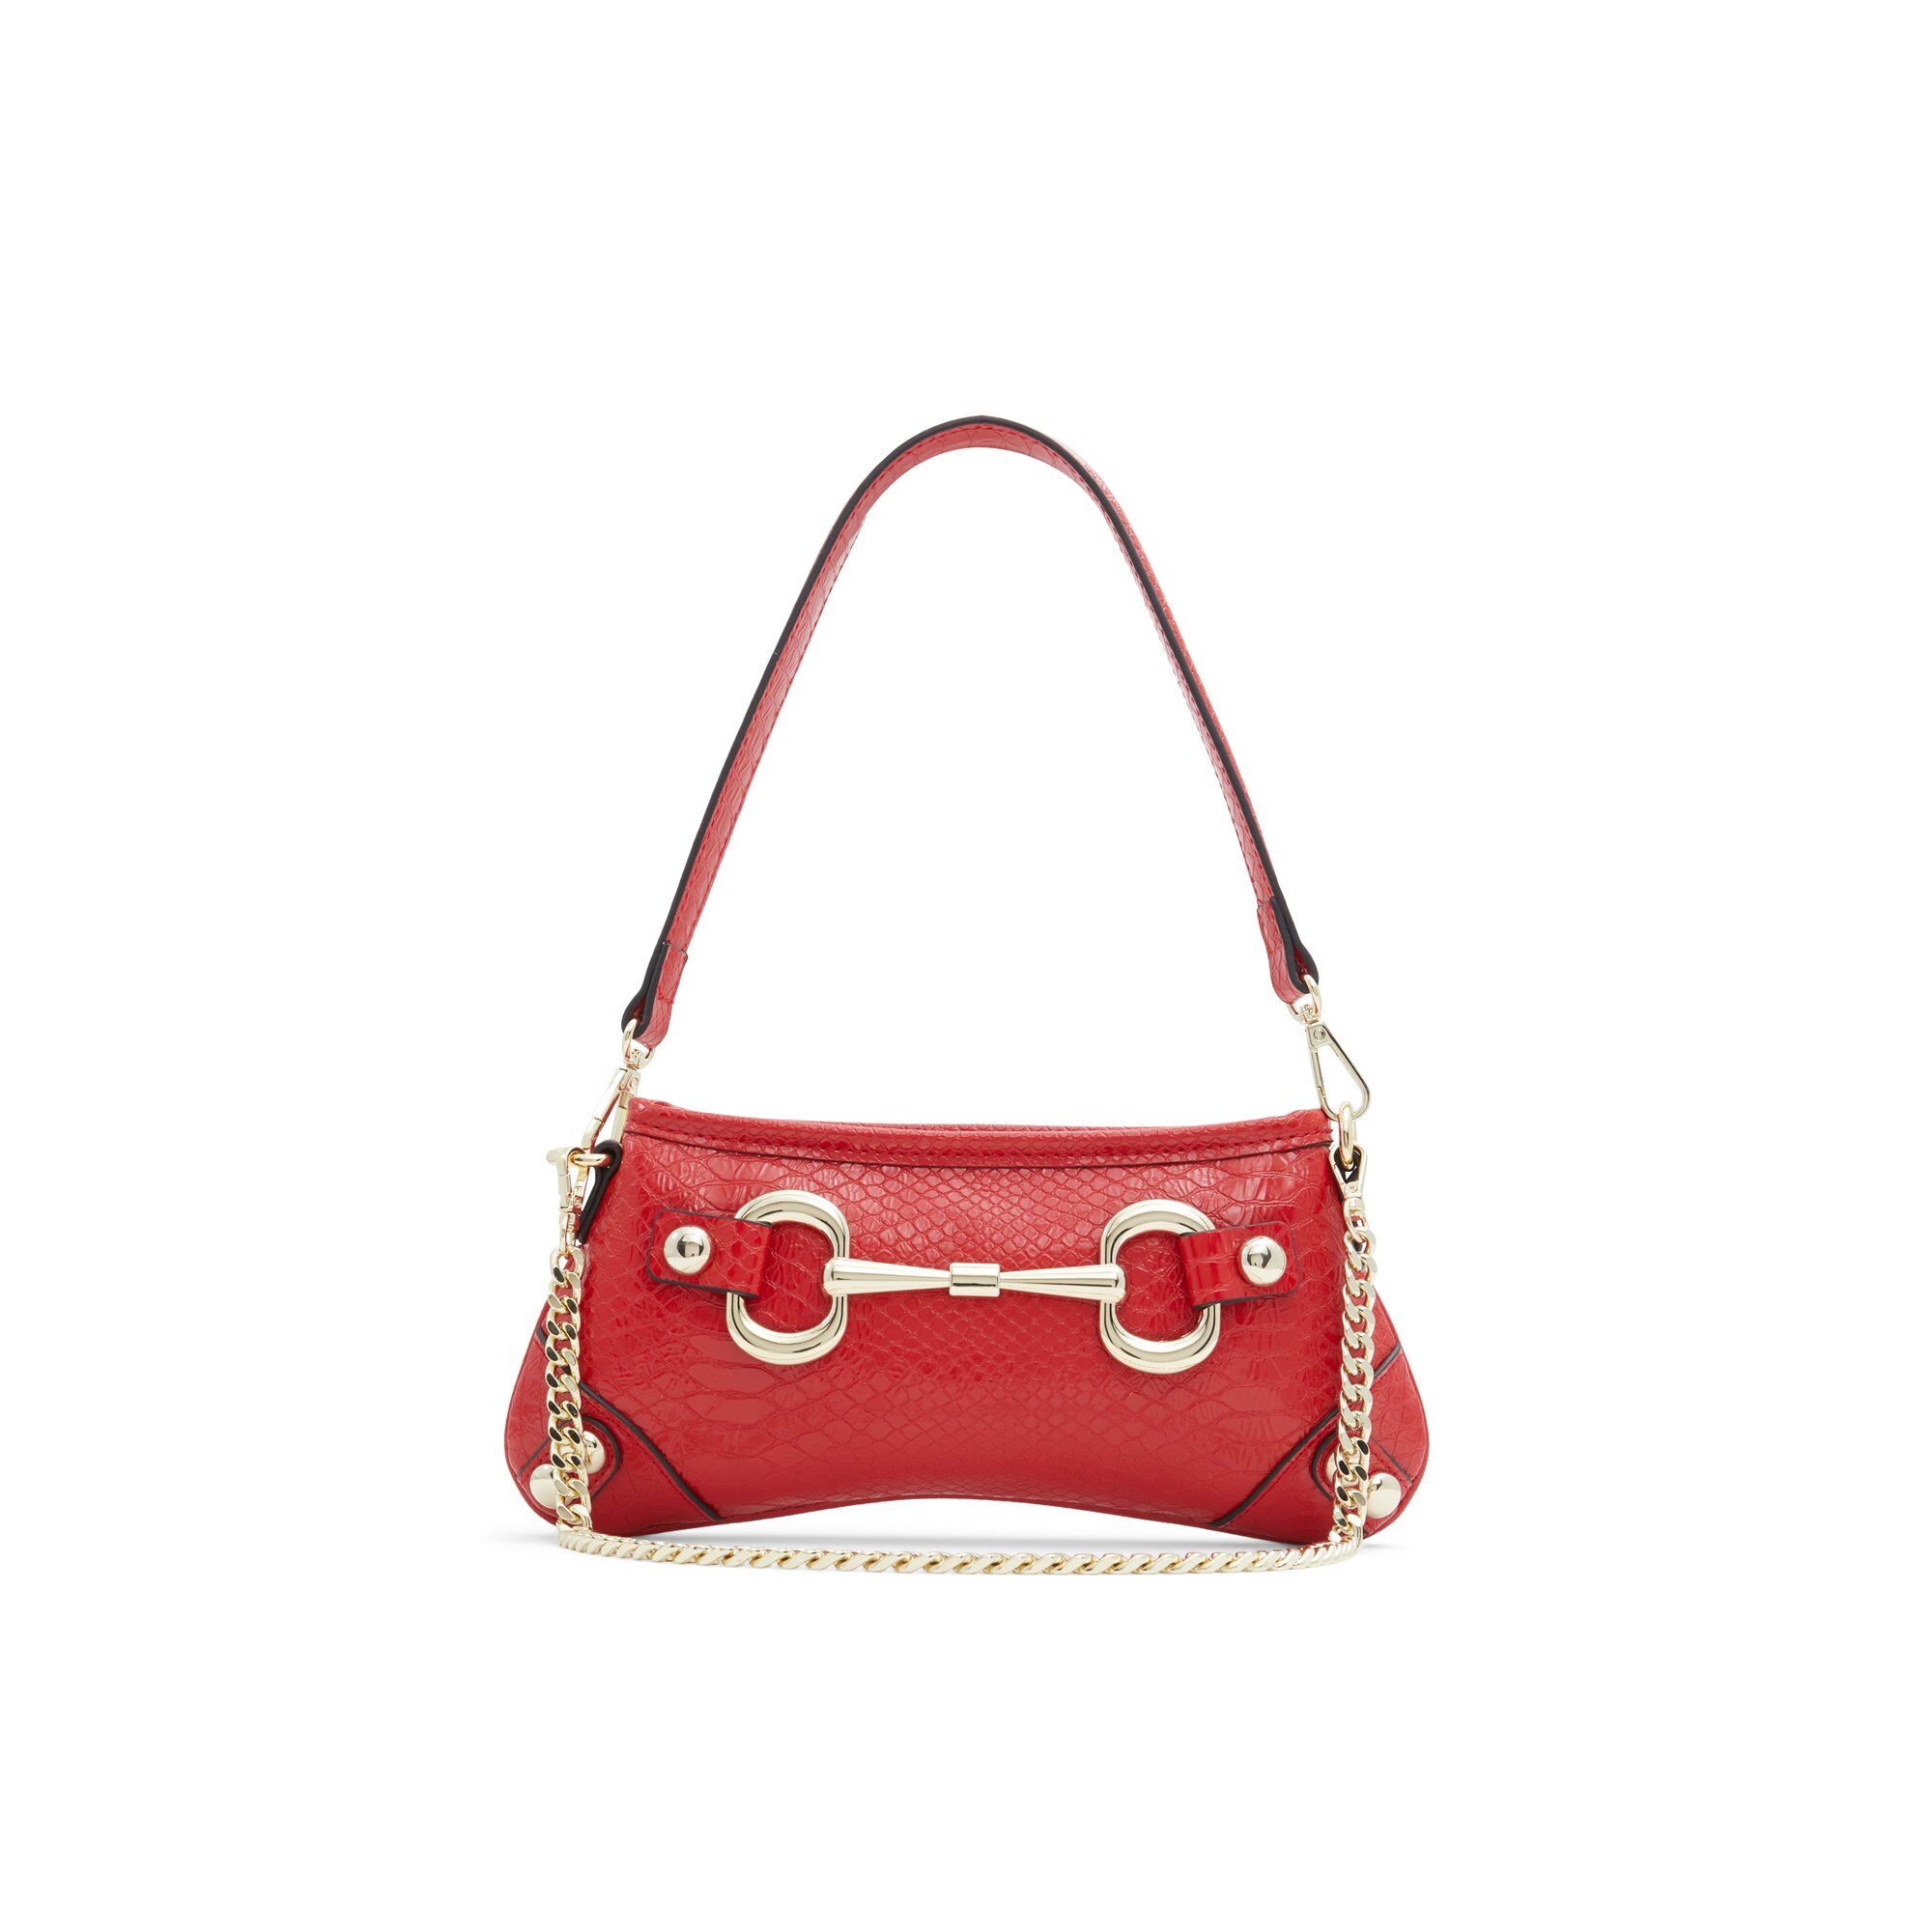 ALDO Madyx - Women's Handbag - Red